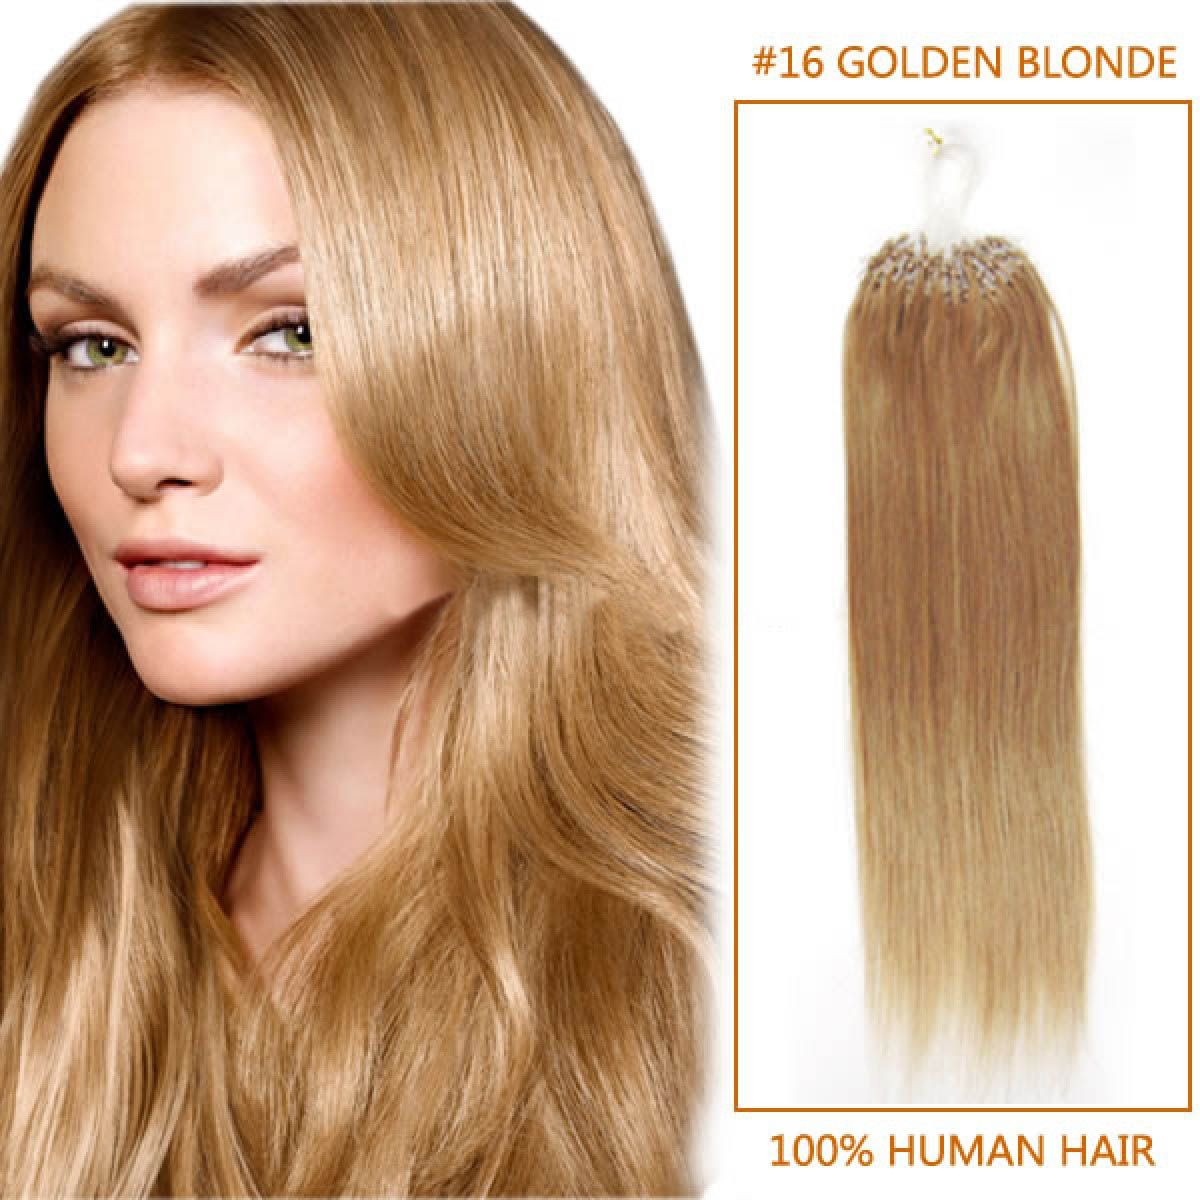 blonde hair extensions human hair